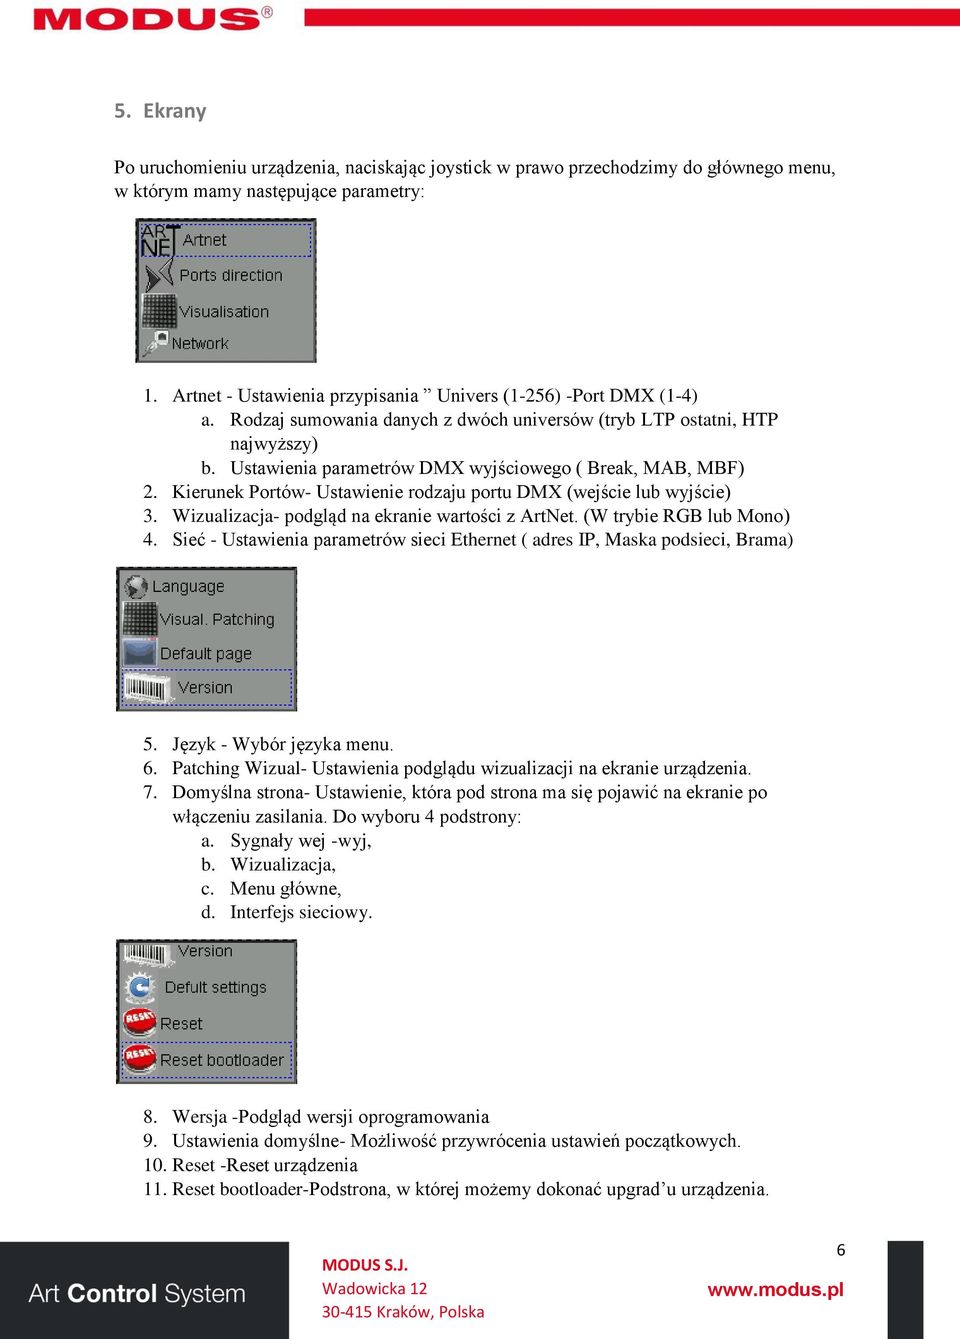 Ustawienia parametrów DMX wyjściowego ( Break, MAB, MBF) 2. Kierunek Portów- Ustawienie rodzaju portu DMX (wejście lub wyjście) 3. Wizualizacja- podgląd na ekranie wartości z ArtNet.